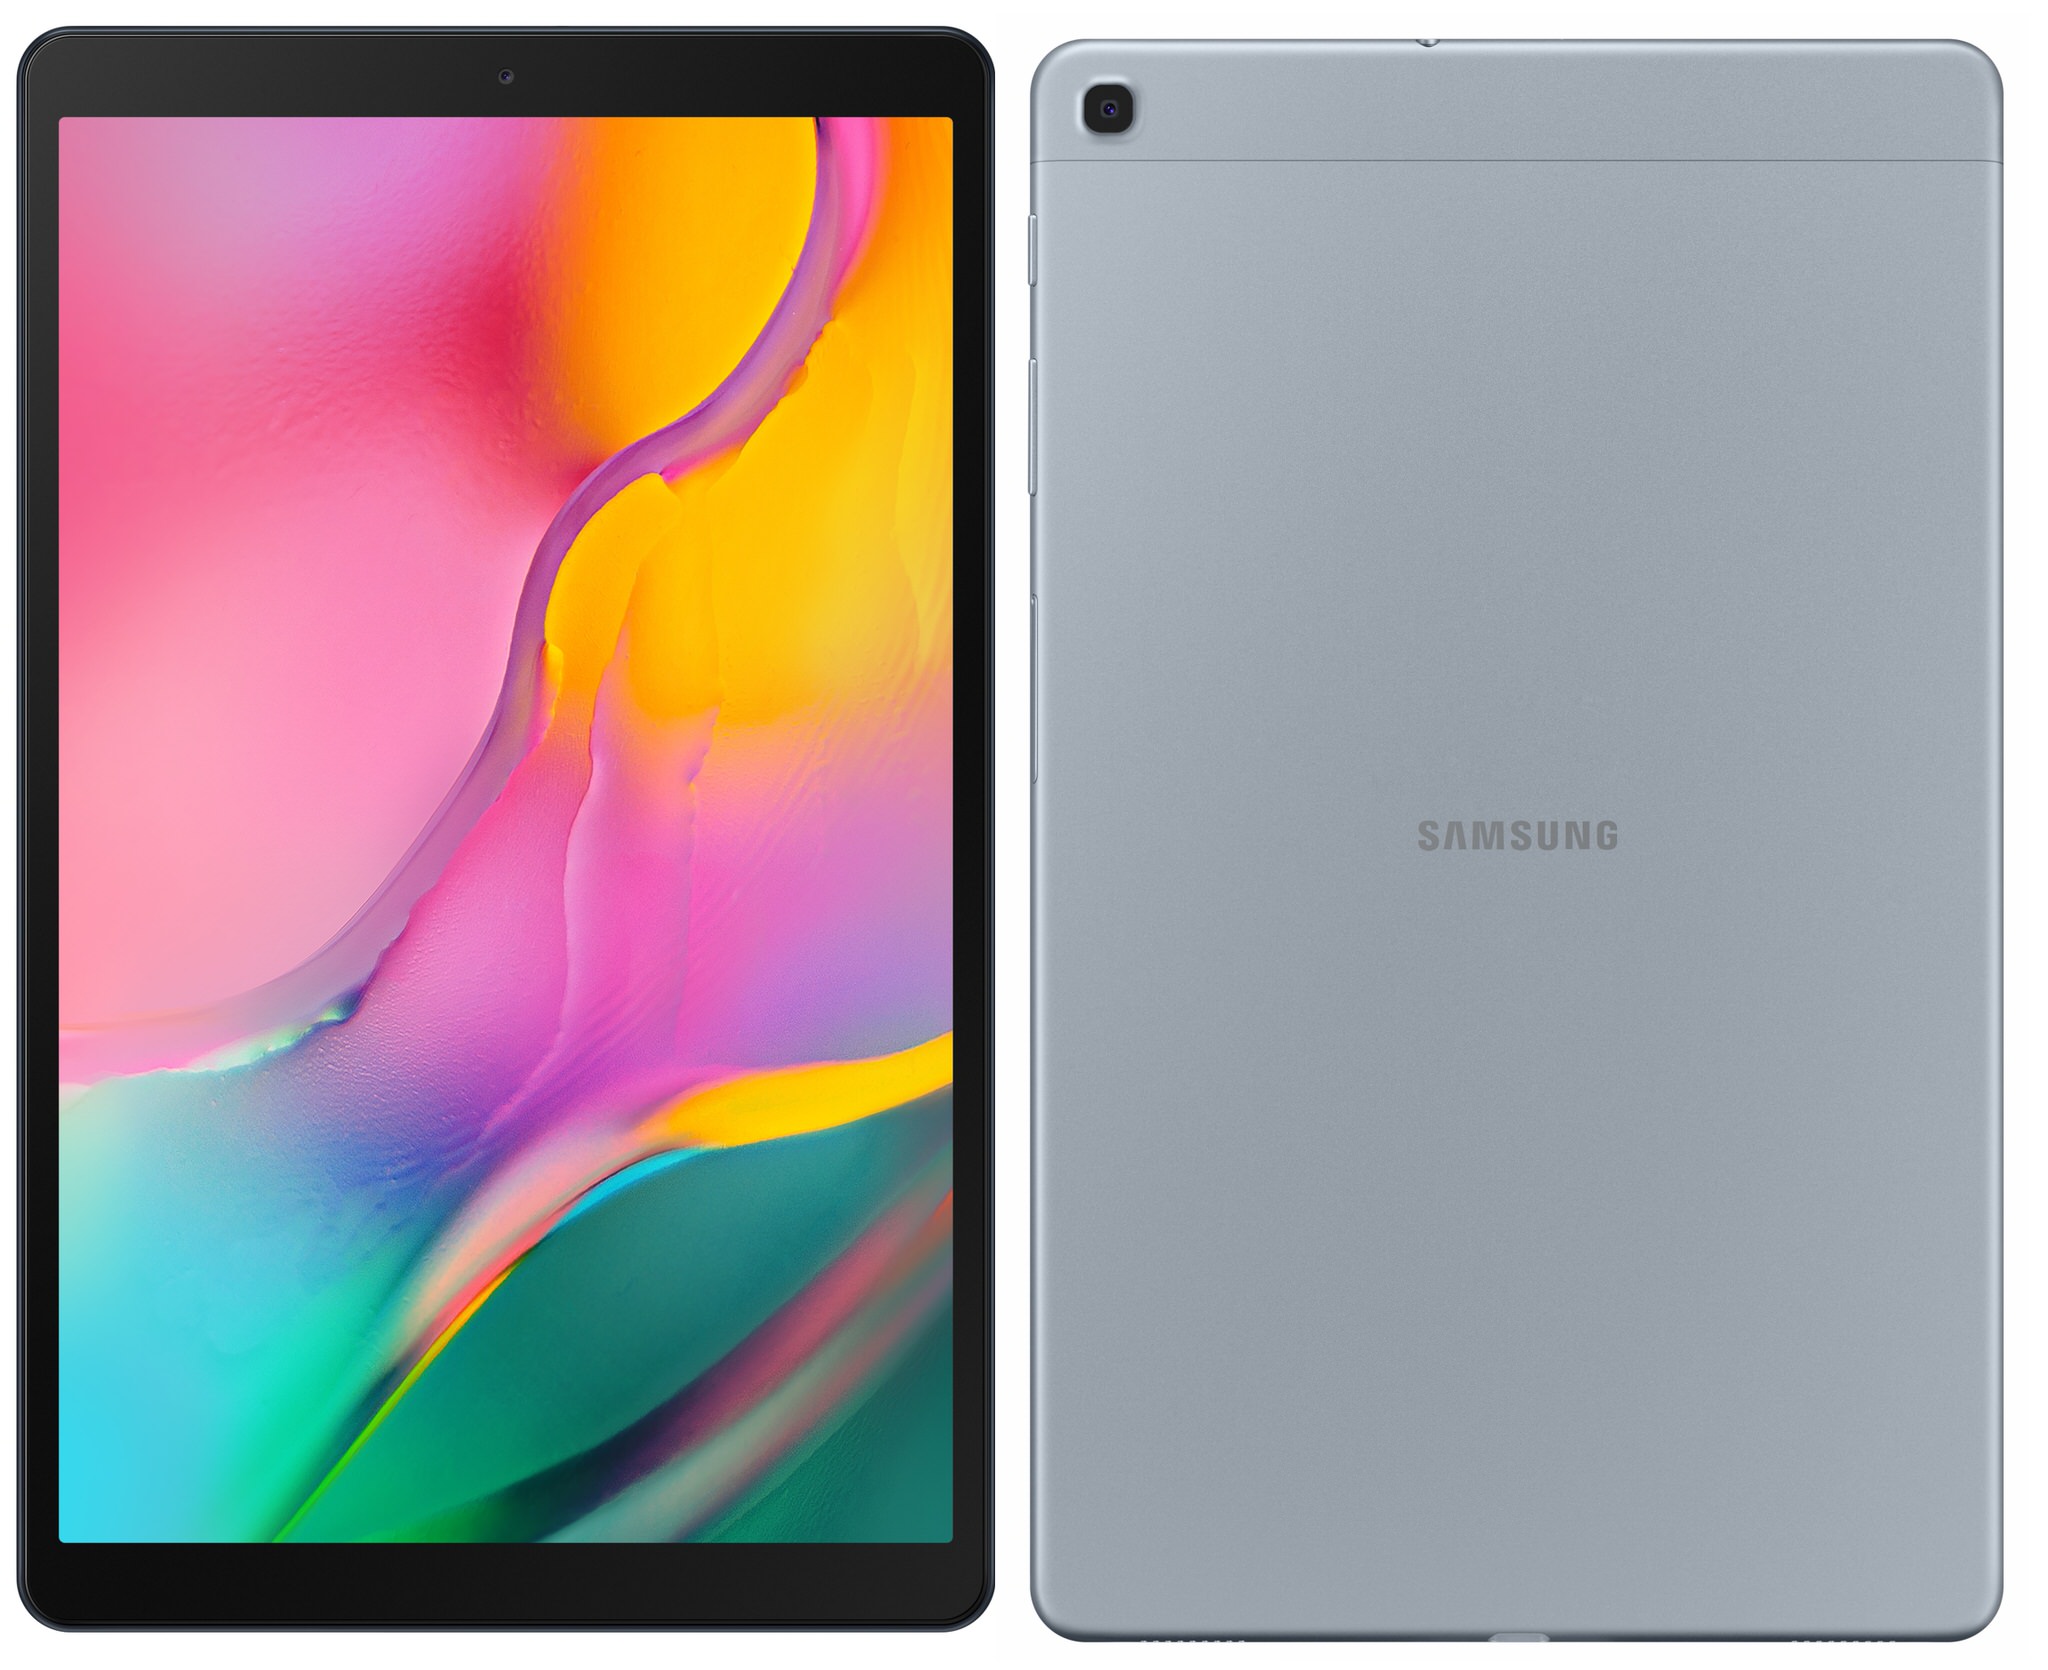 Samsung ra mắt bộ ba máy tính bảng mới: Galaxy Tab S5e, Galaxy Tab A 10.1 và Galaxy Tab A Plus 8